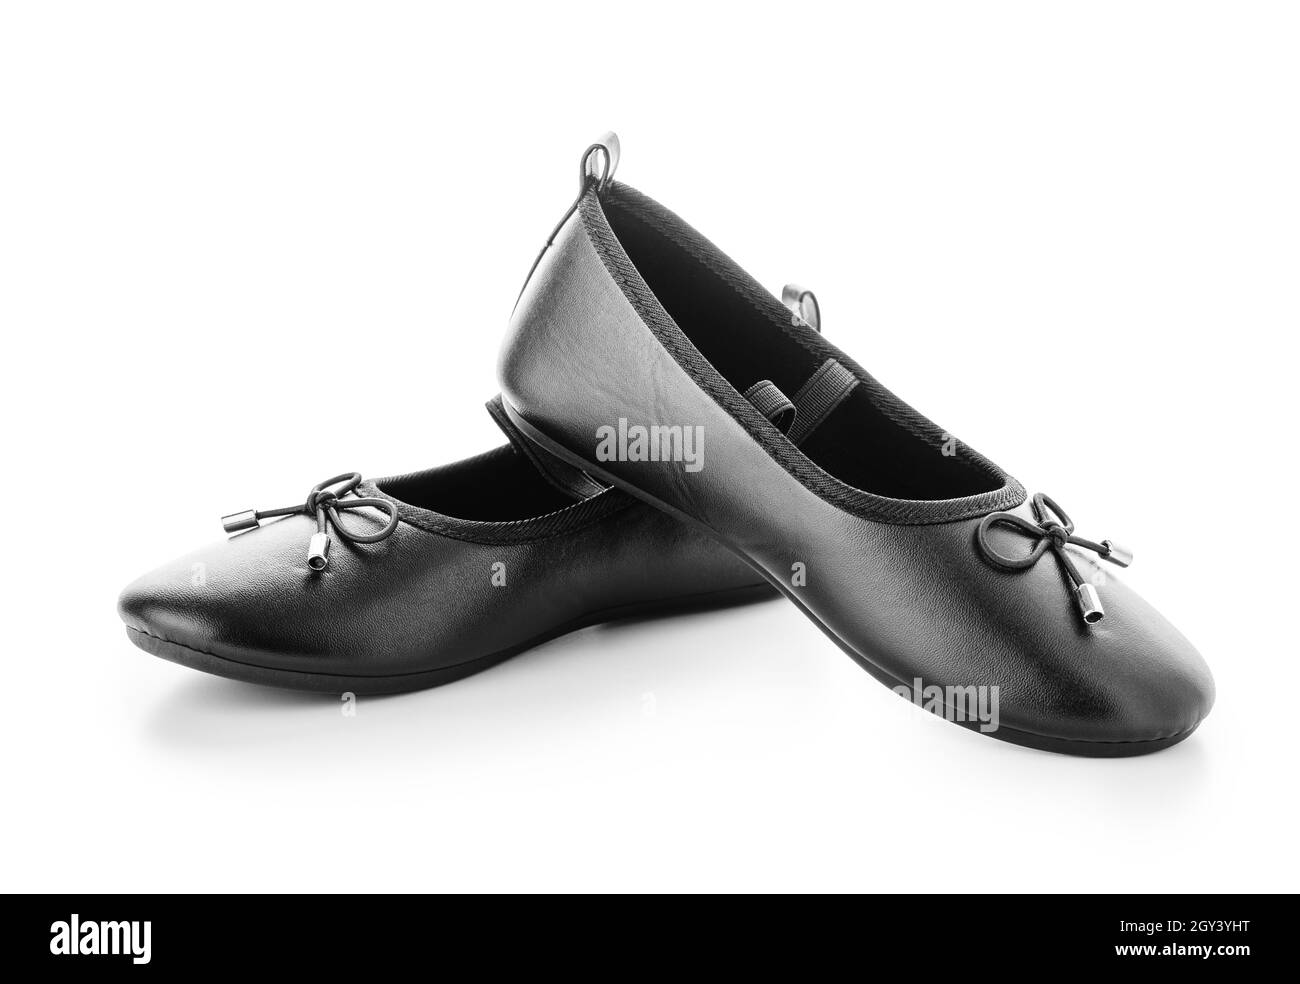 Zapatos negros a bailar de stock - Alamy